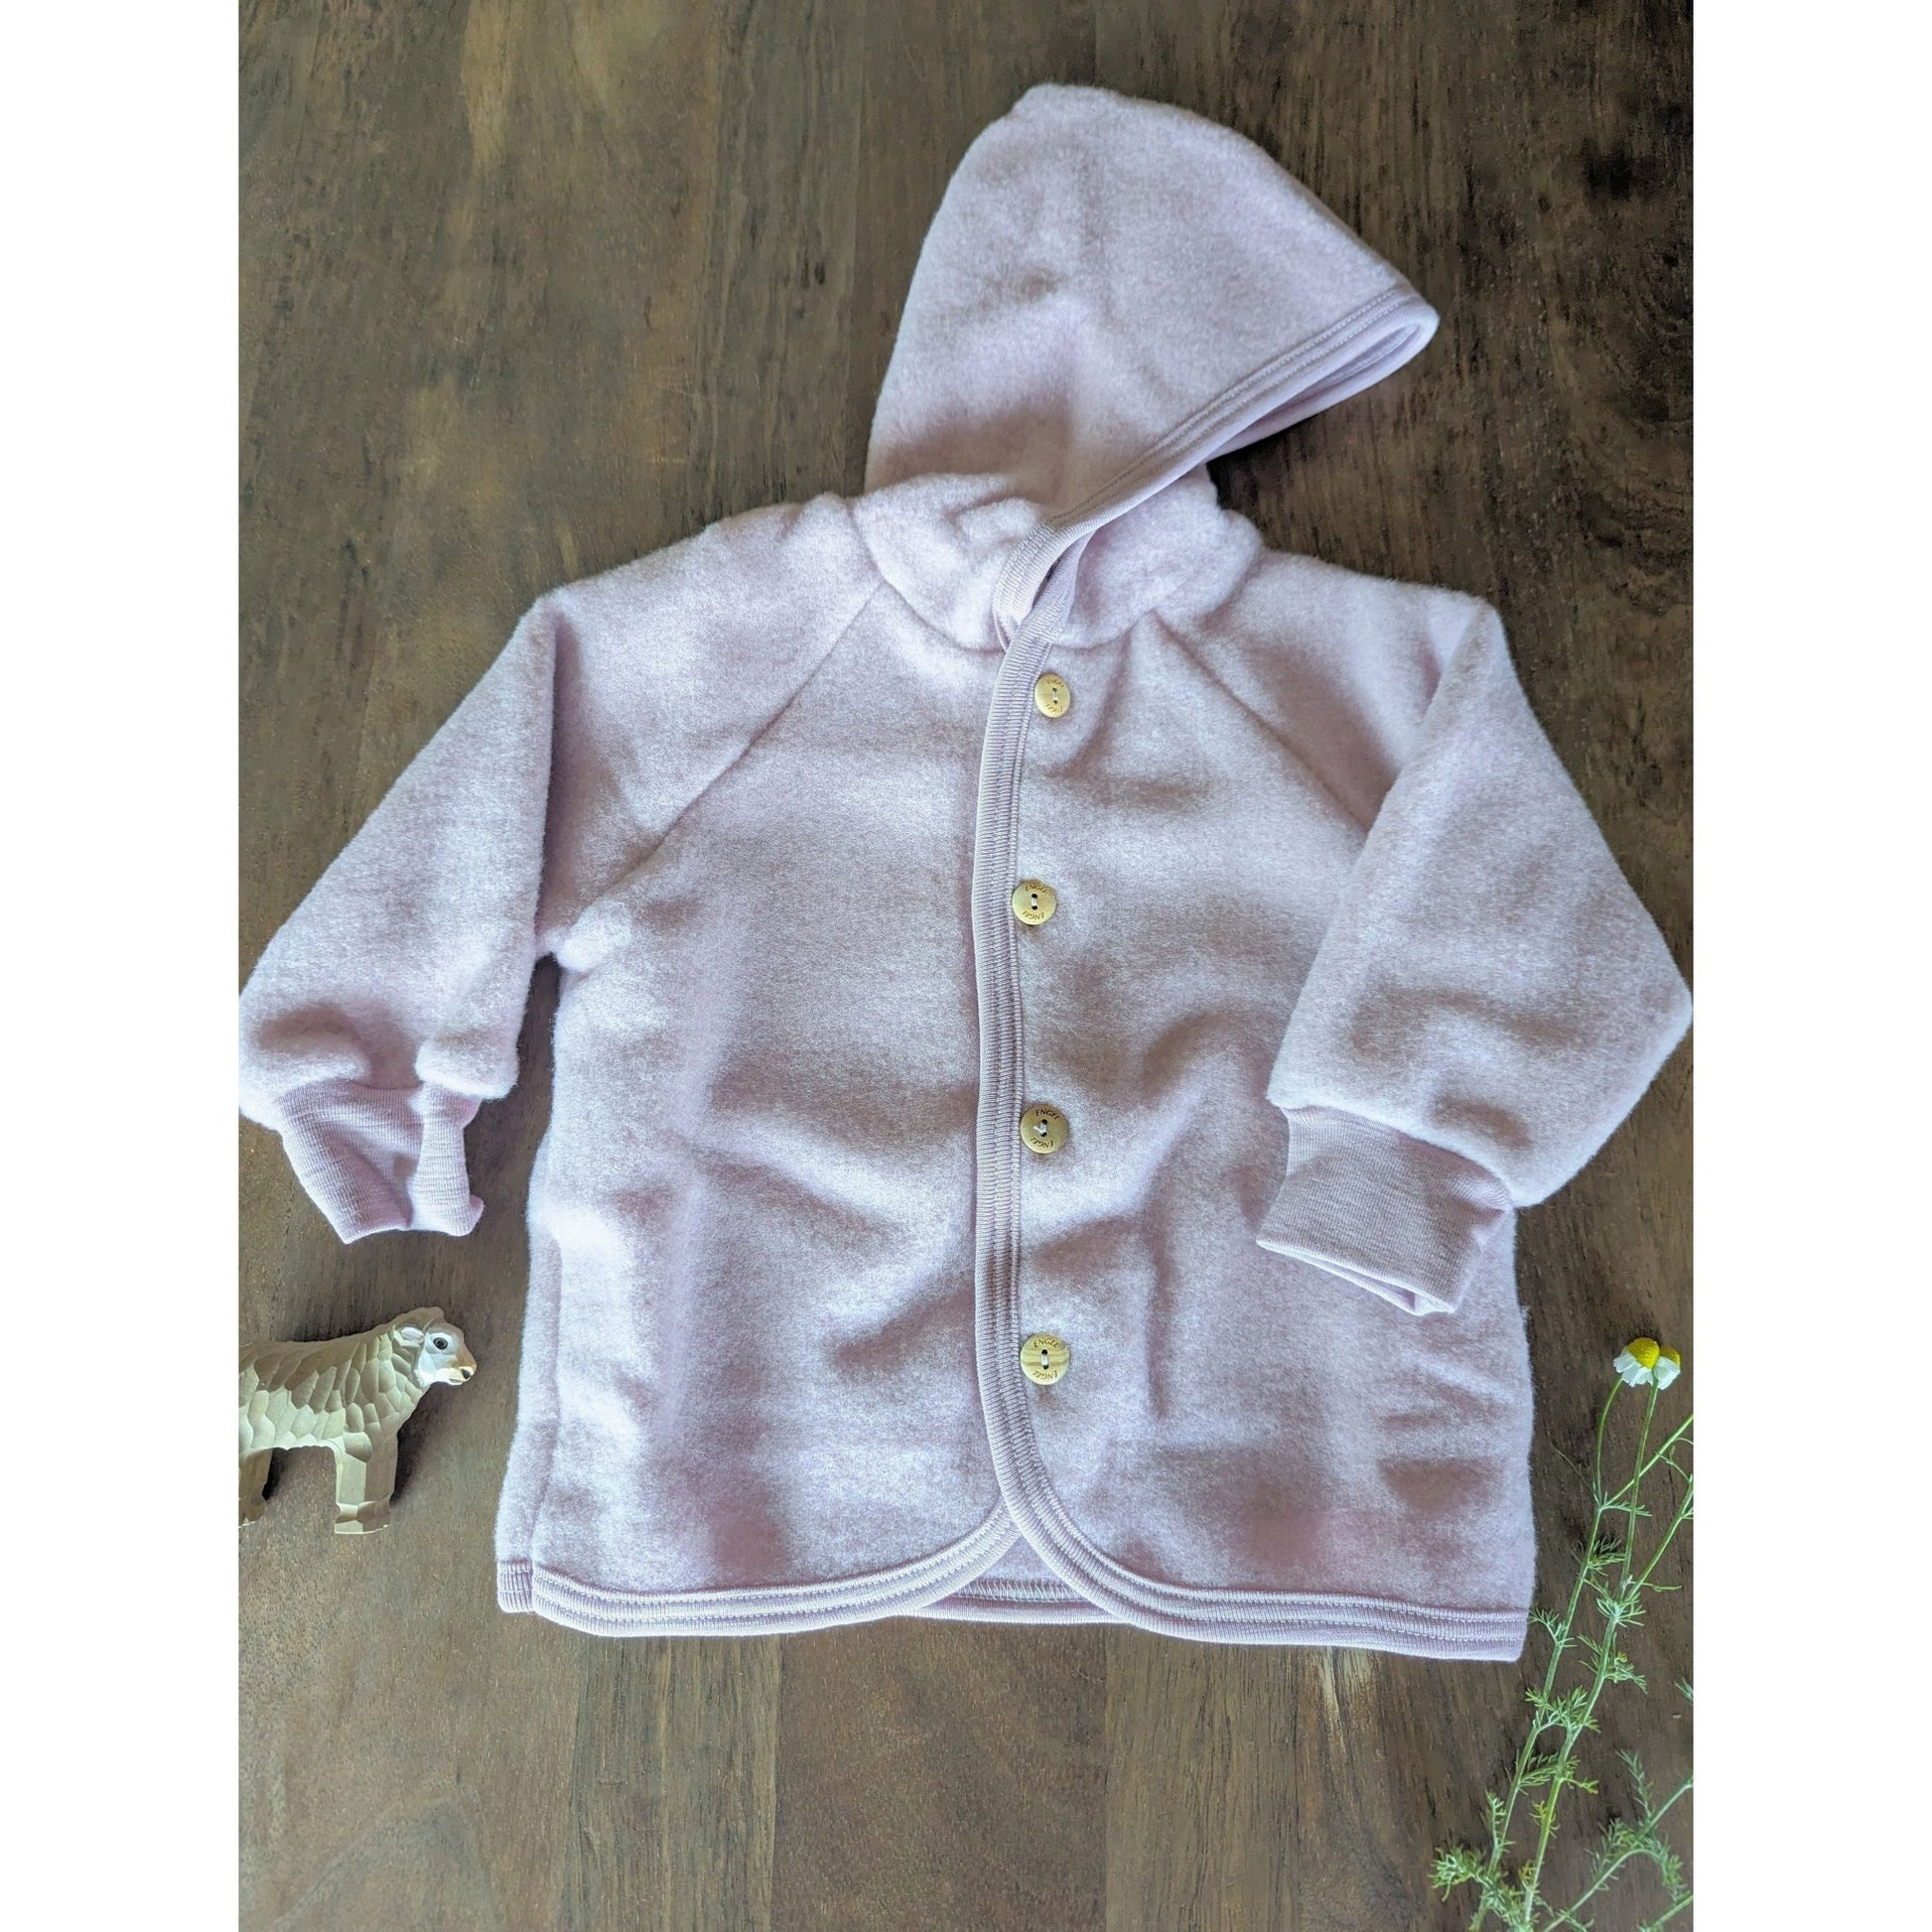 Organic Merino Wool Fleece Baby, Kids Jacket